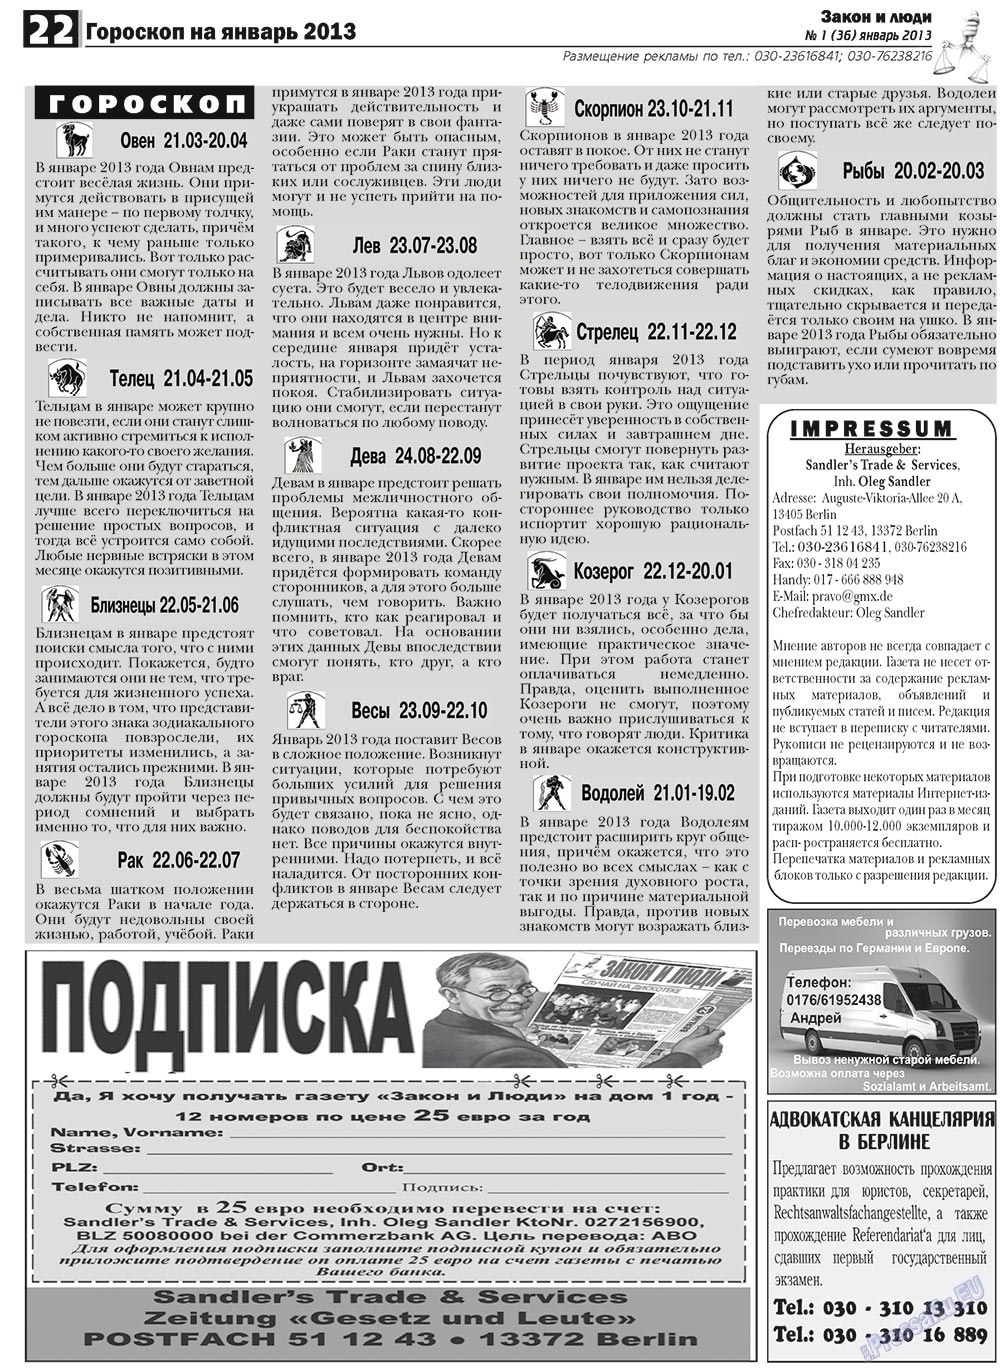 Закон и люди, газета. 2013 №1 стр.22